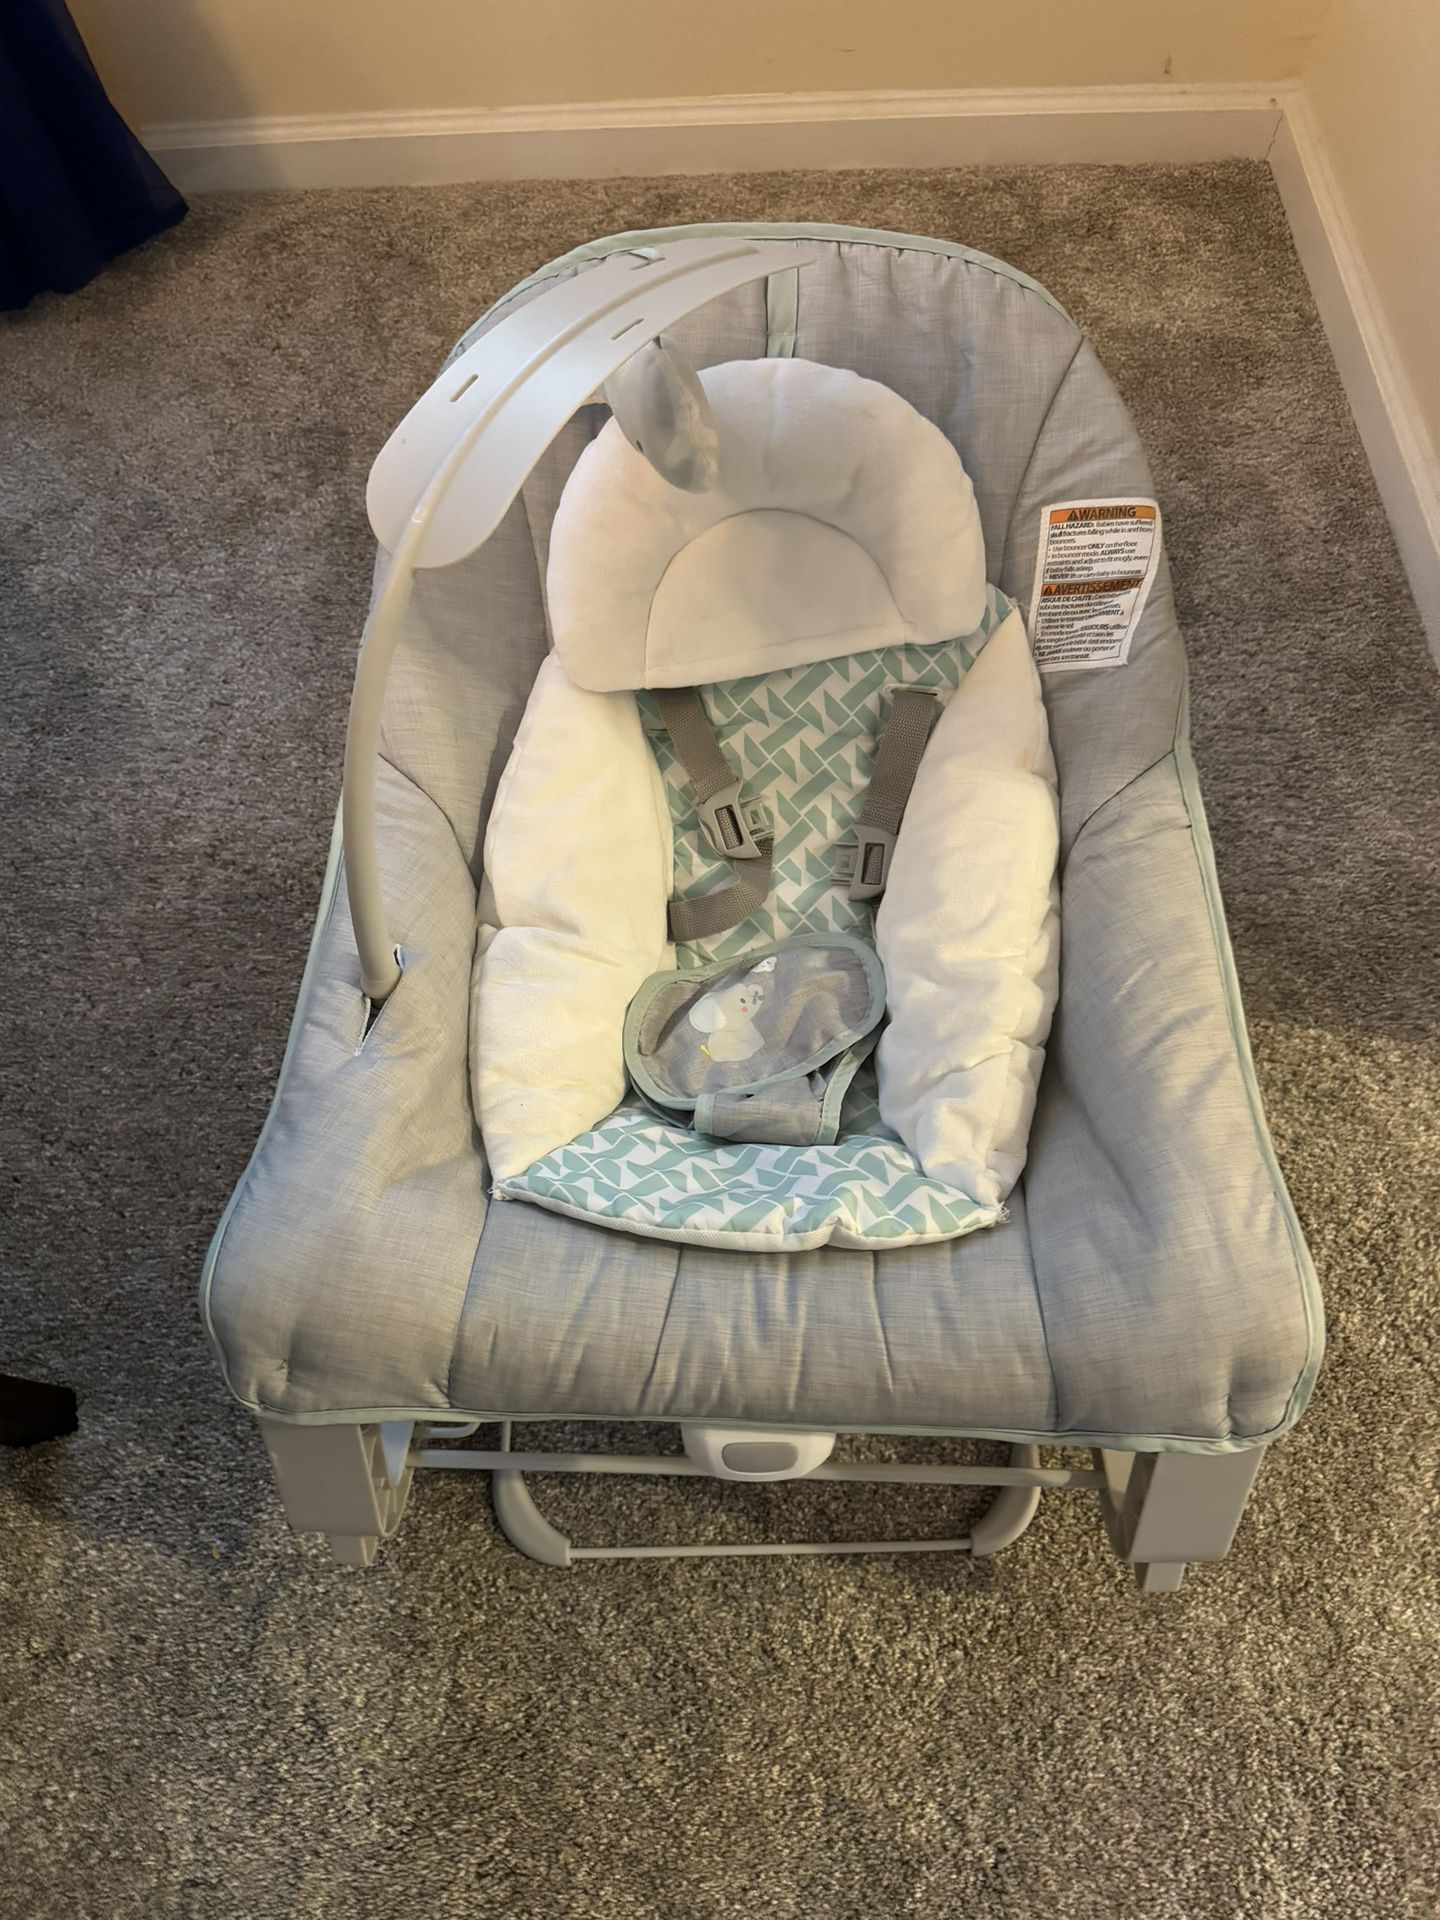 Baby Bouncer, Rocker & Toddler Seat